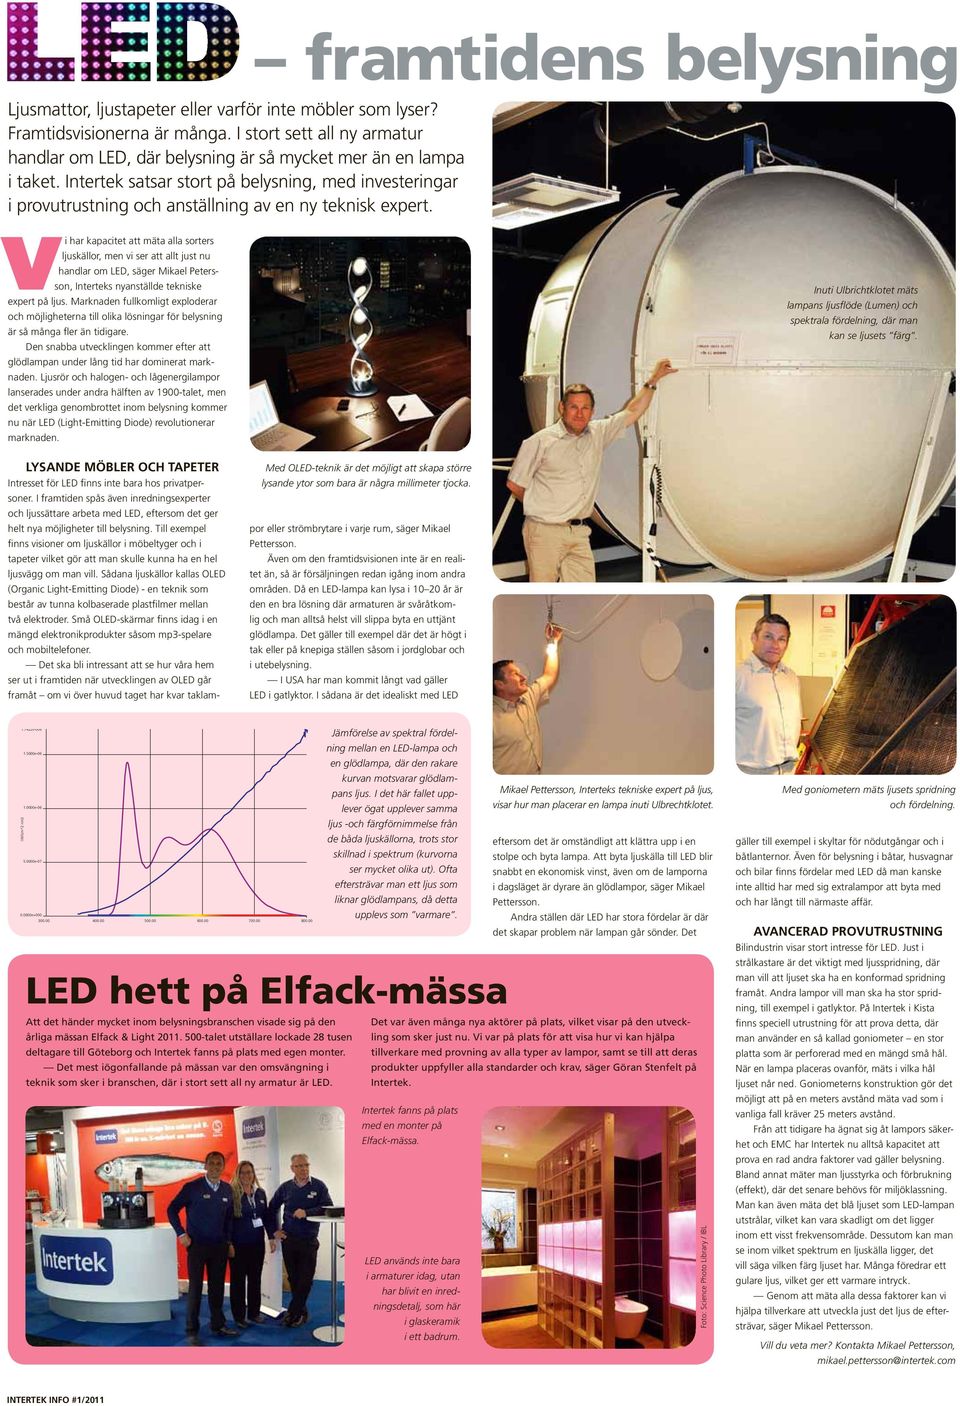 framtidens belysning Vi har kapacitet att mäta alla sorters ljuskällor, men vi ser att allt just nu handlar om LED, säger Mikael Petersson, Interteks nyanställde tekniske expert på ljus.